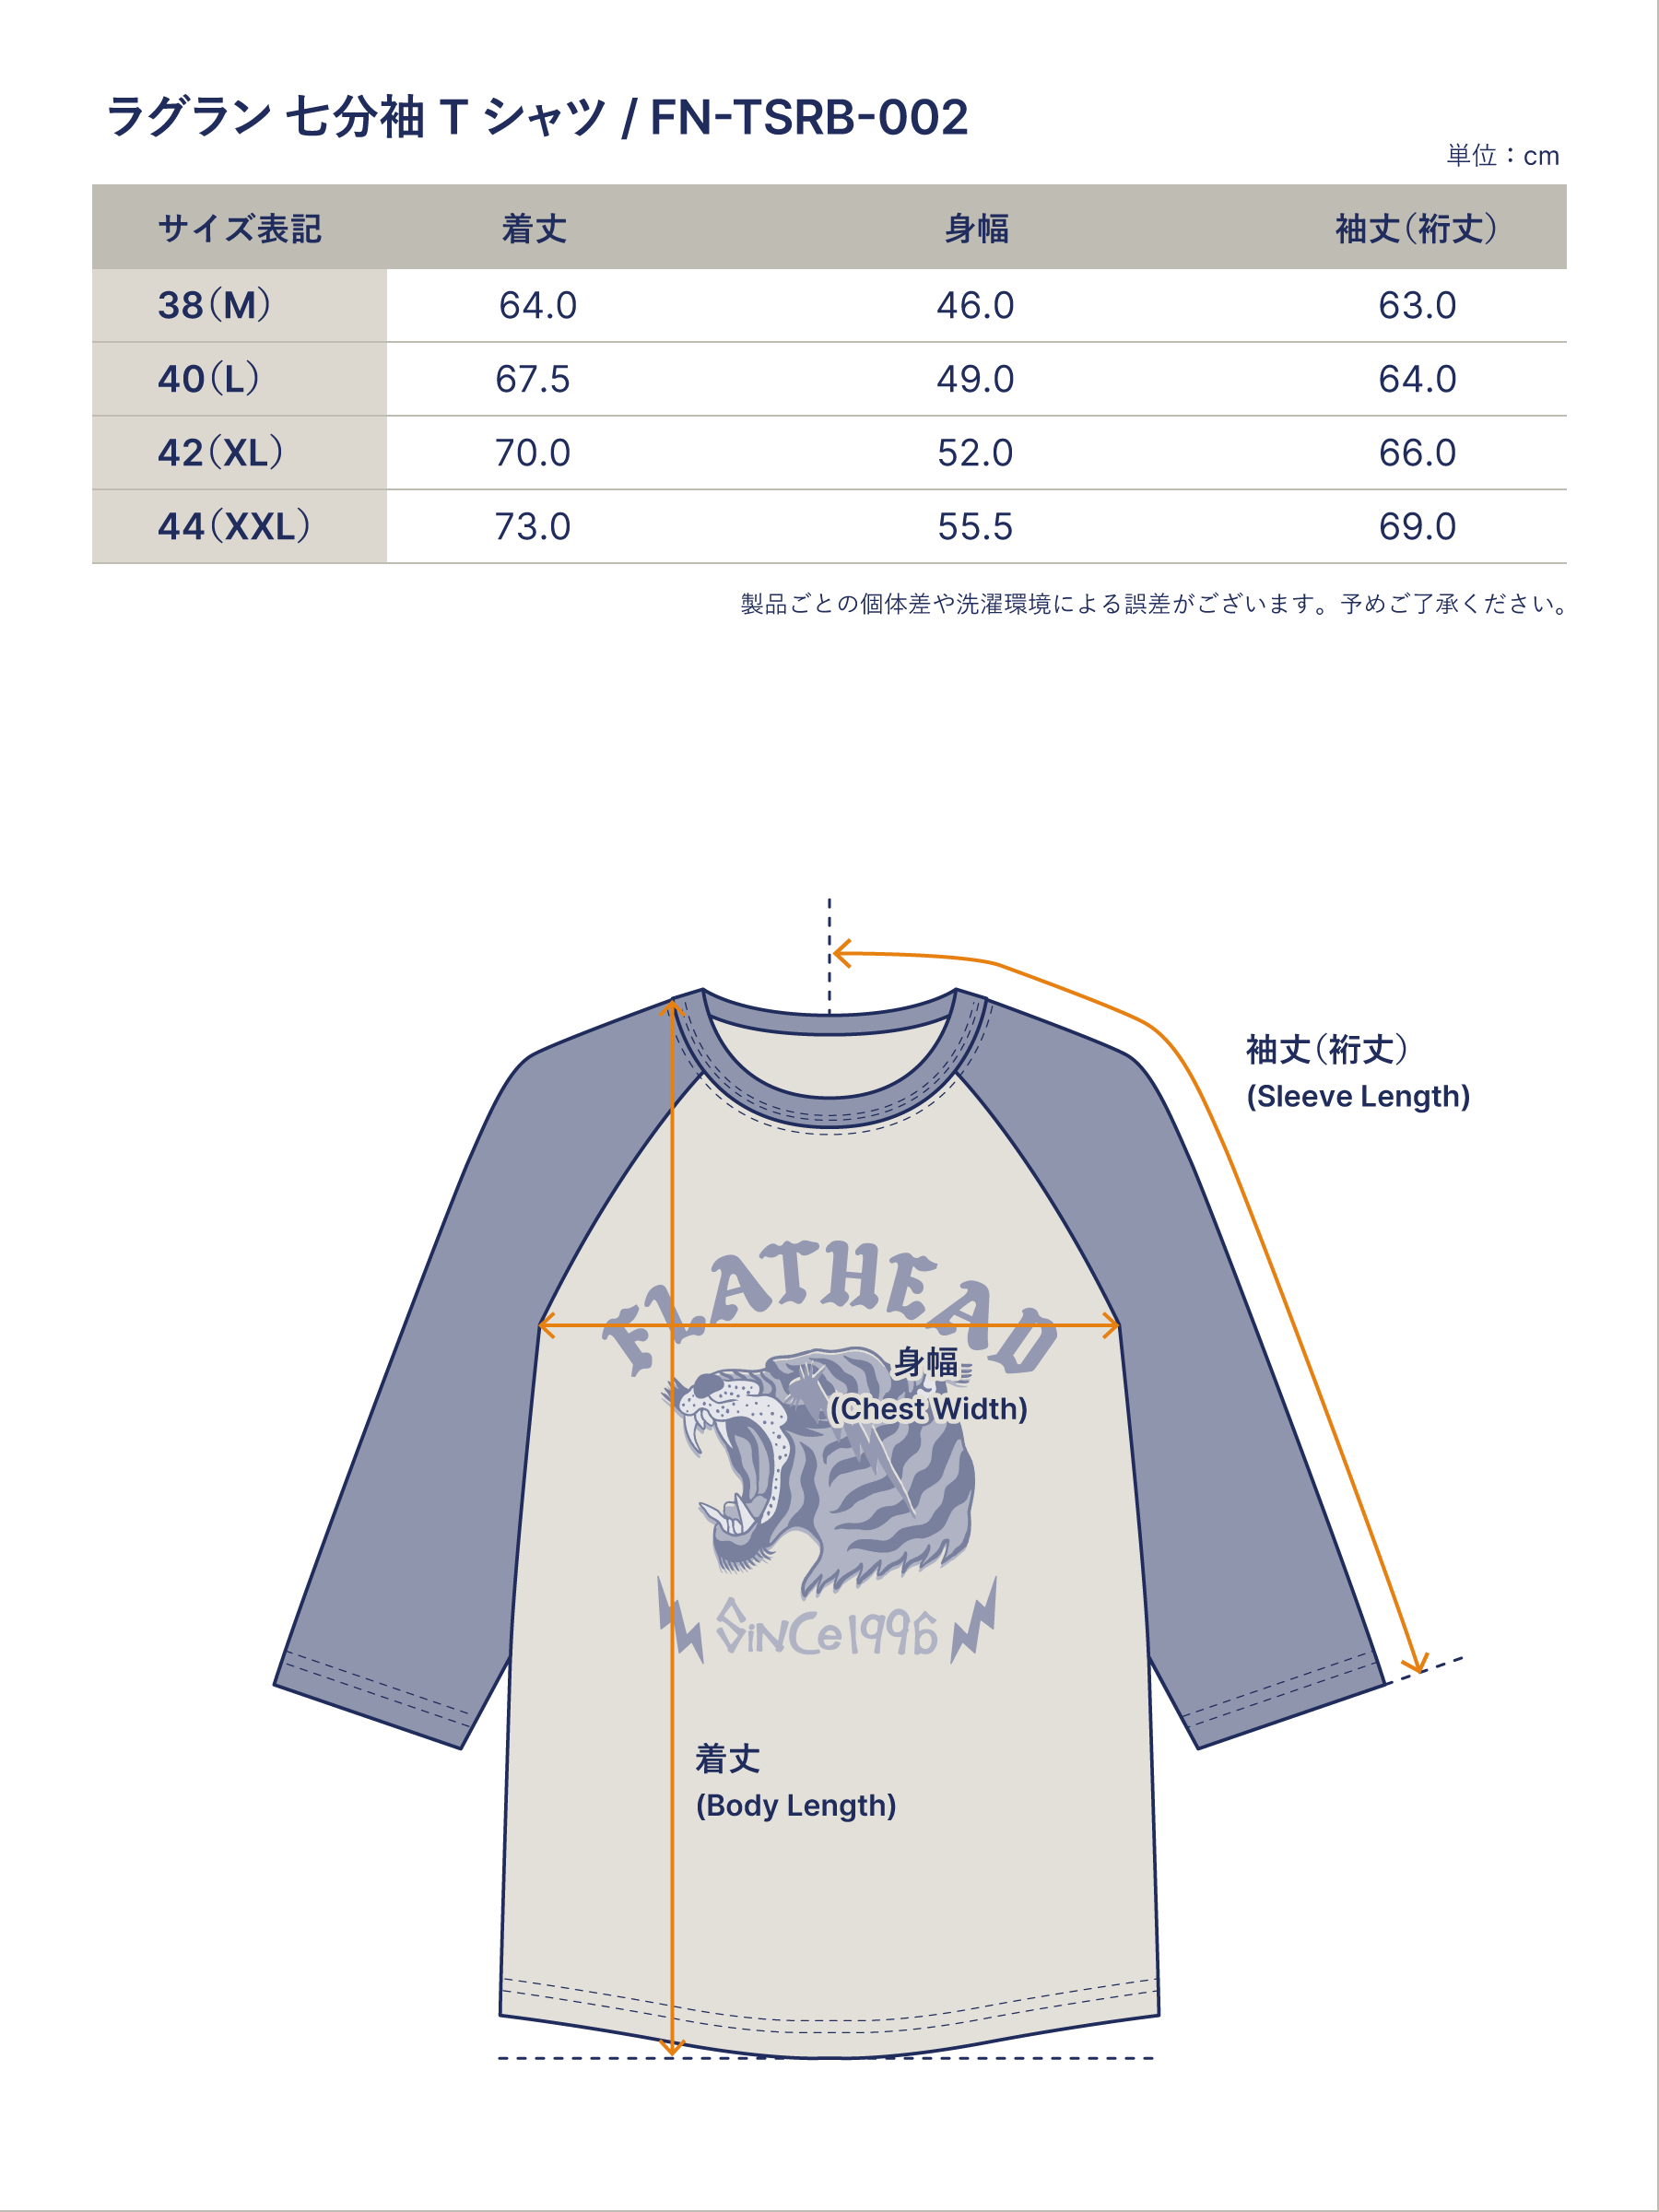 ラグラン 七分袖 Tシャツ FN-TSRB-002